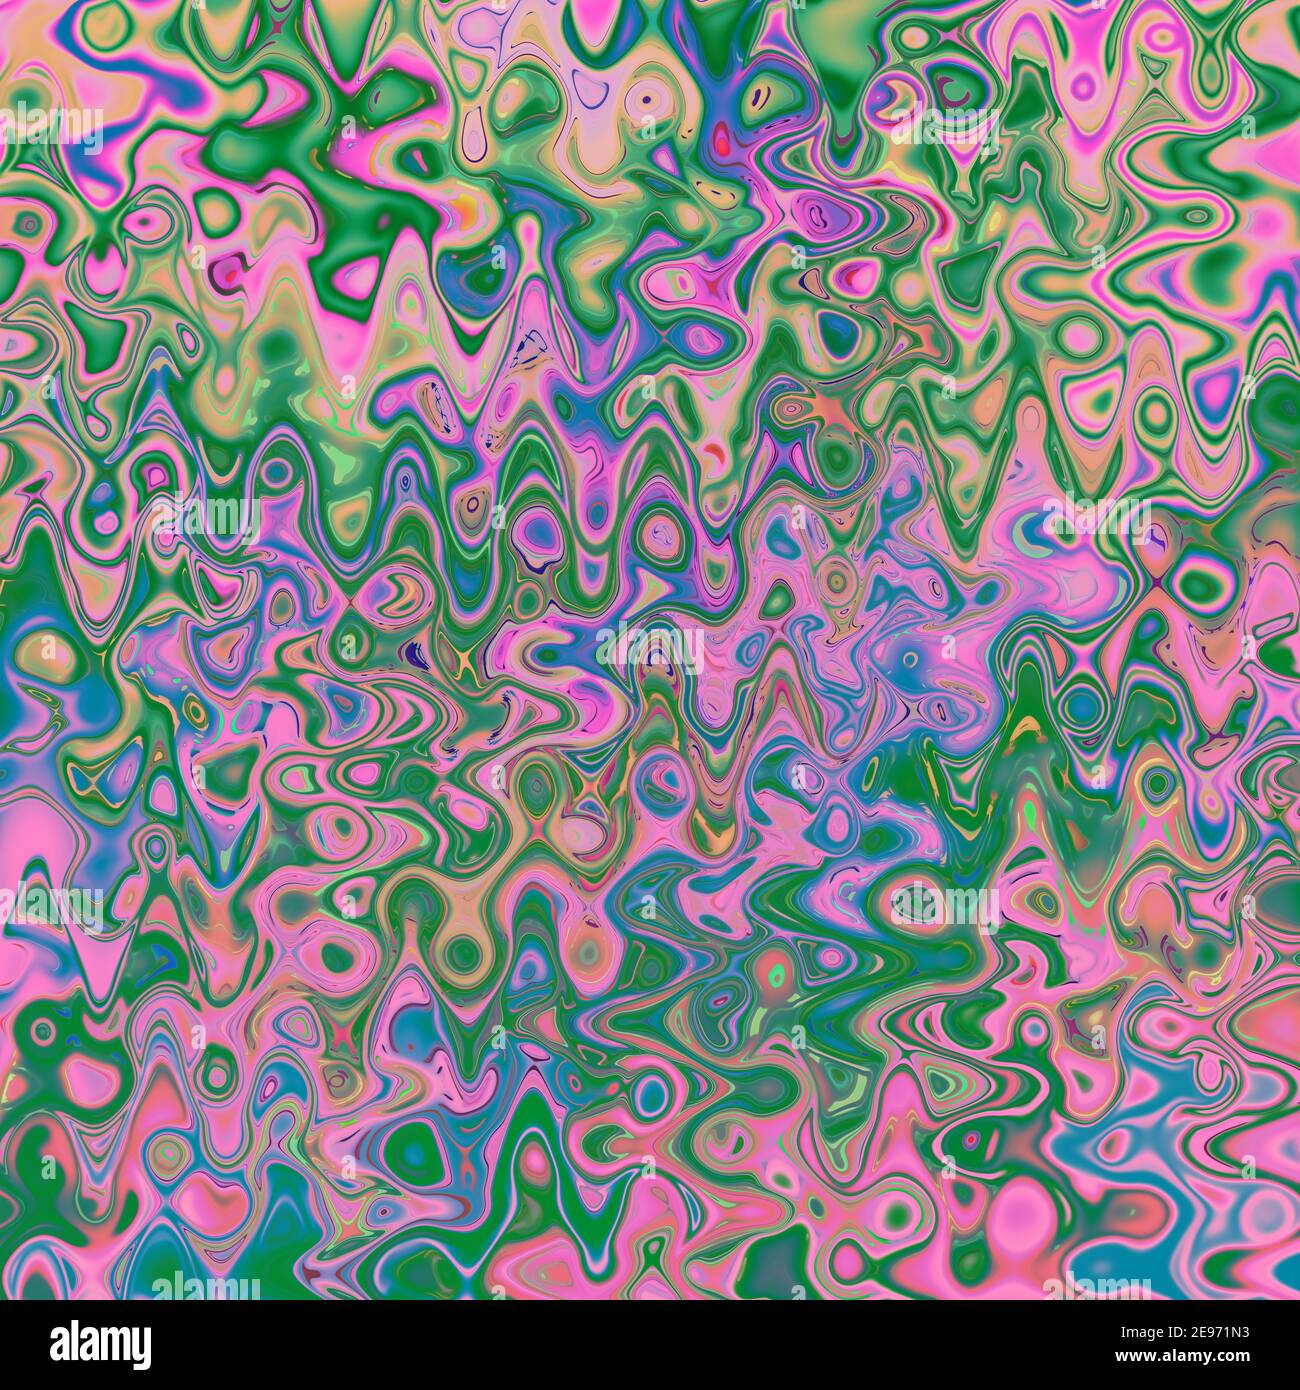 Eine abstrakte Wellig psychedelischen Hintergrundbild. Stockfoto